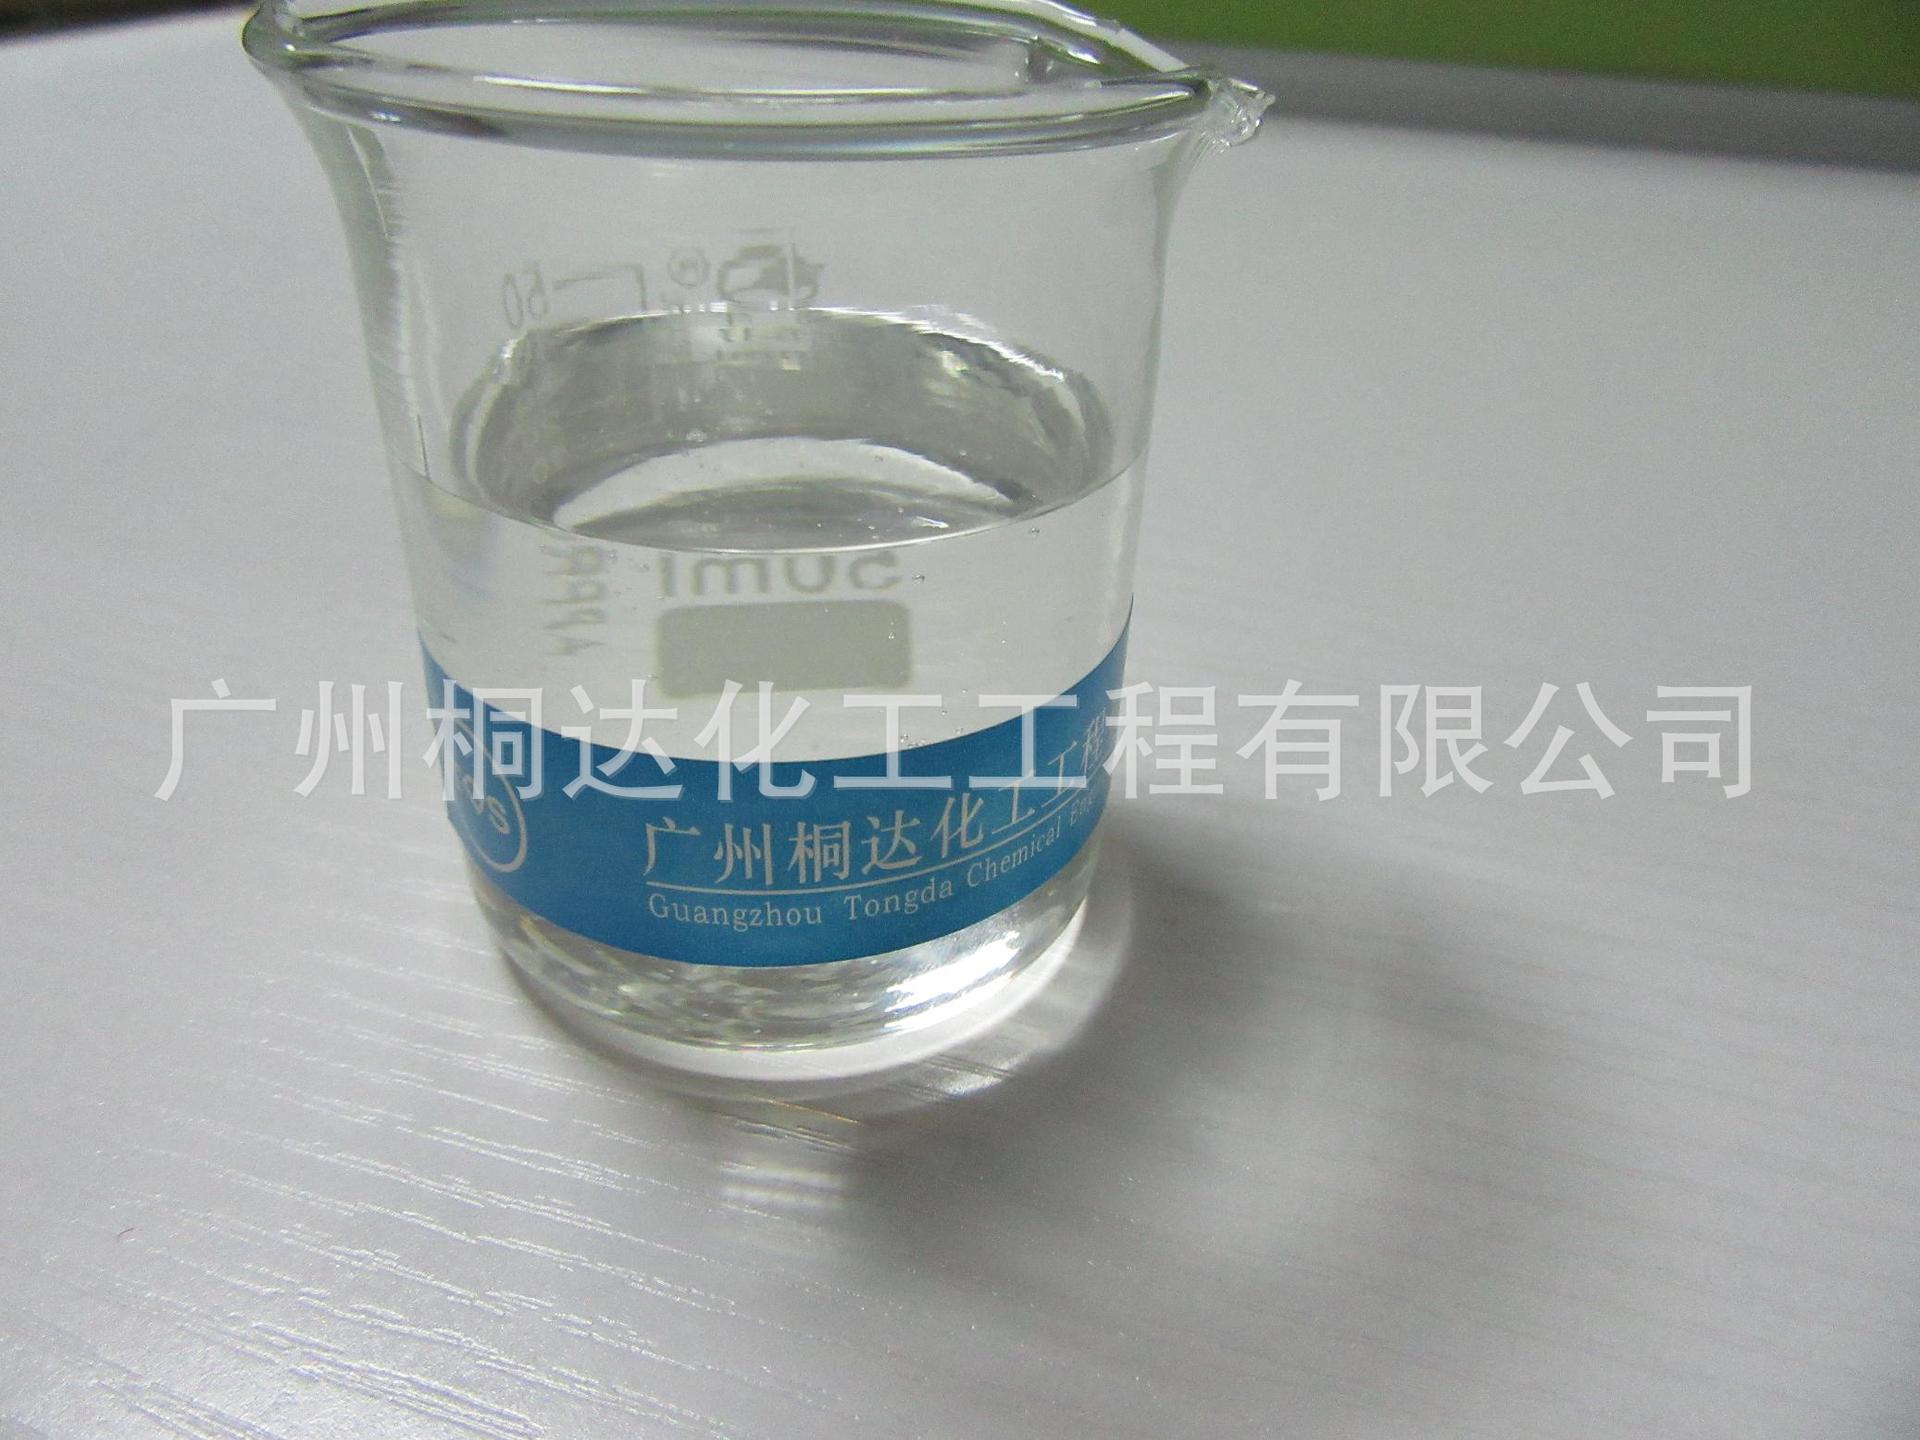 RRJ-213 柔软剂、柔软平滑剂、织物滑爽丰满剂 耐洗涤、丝质手感示例图2